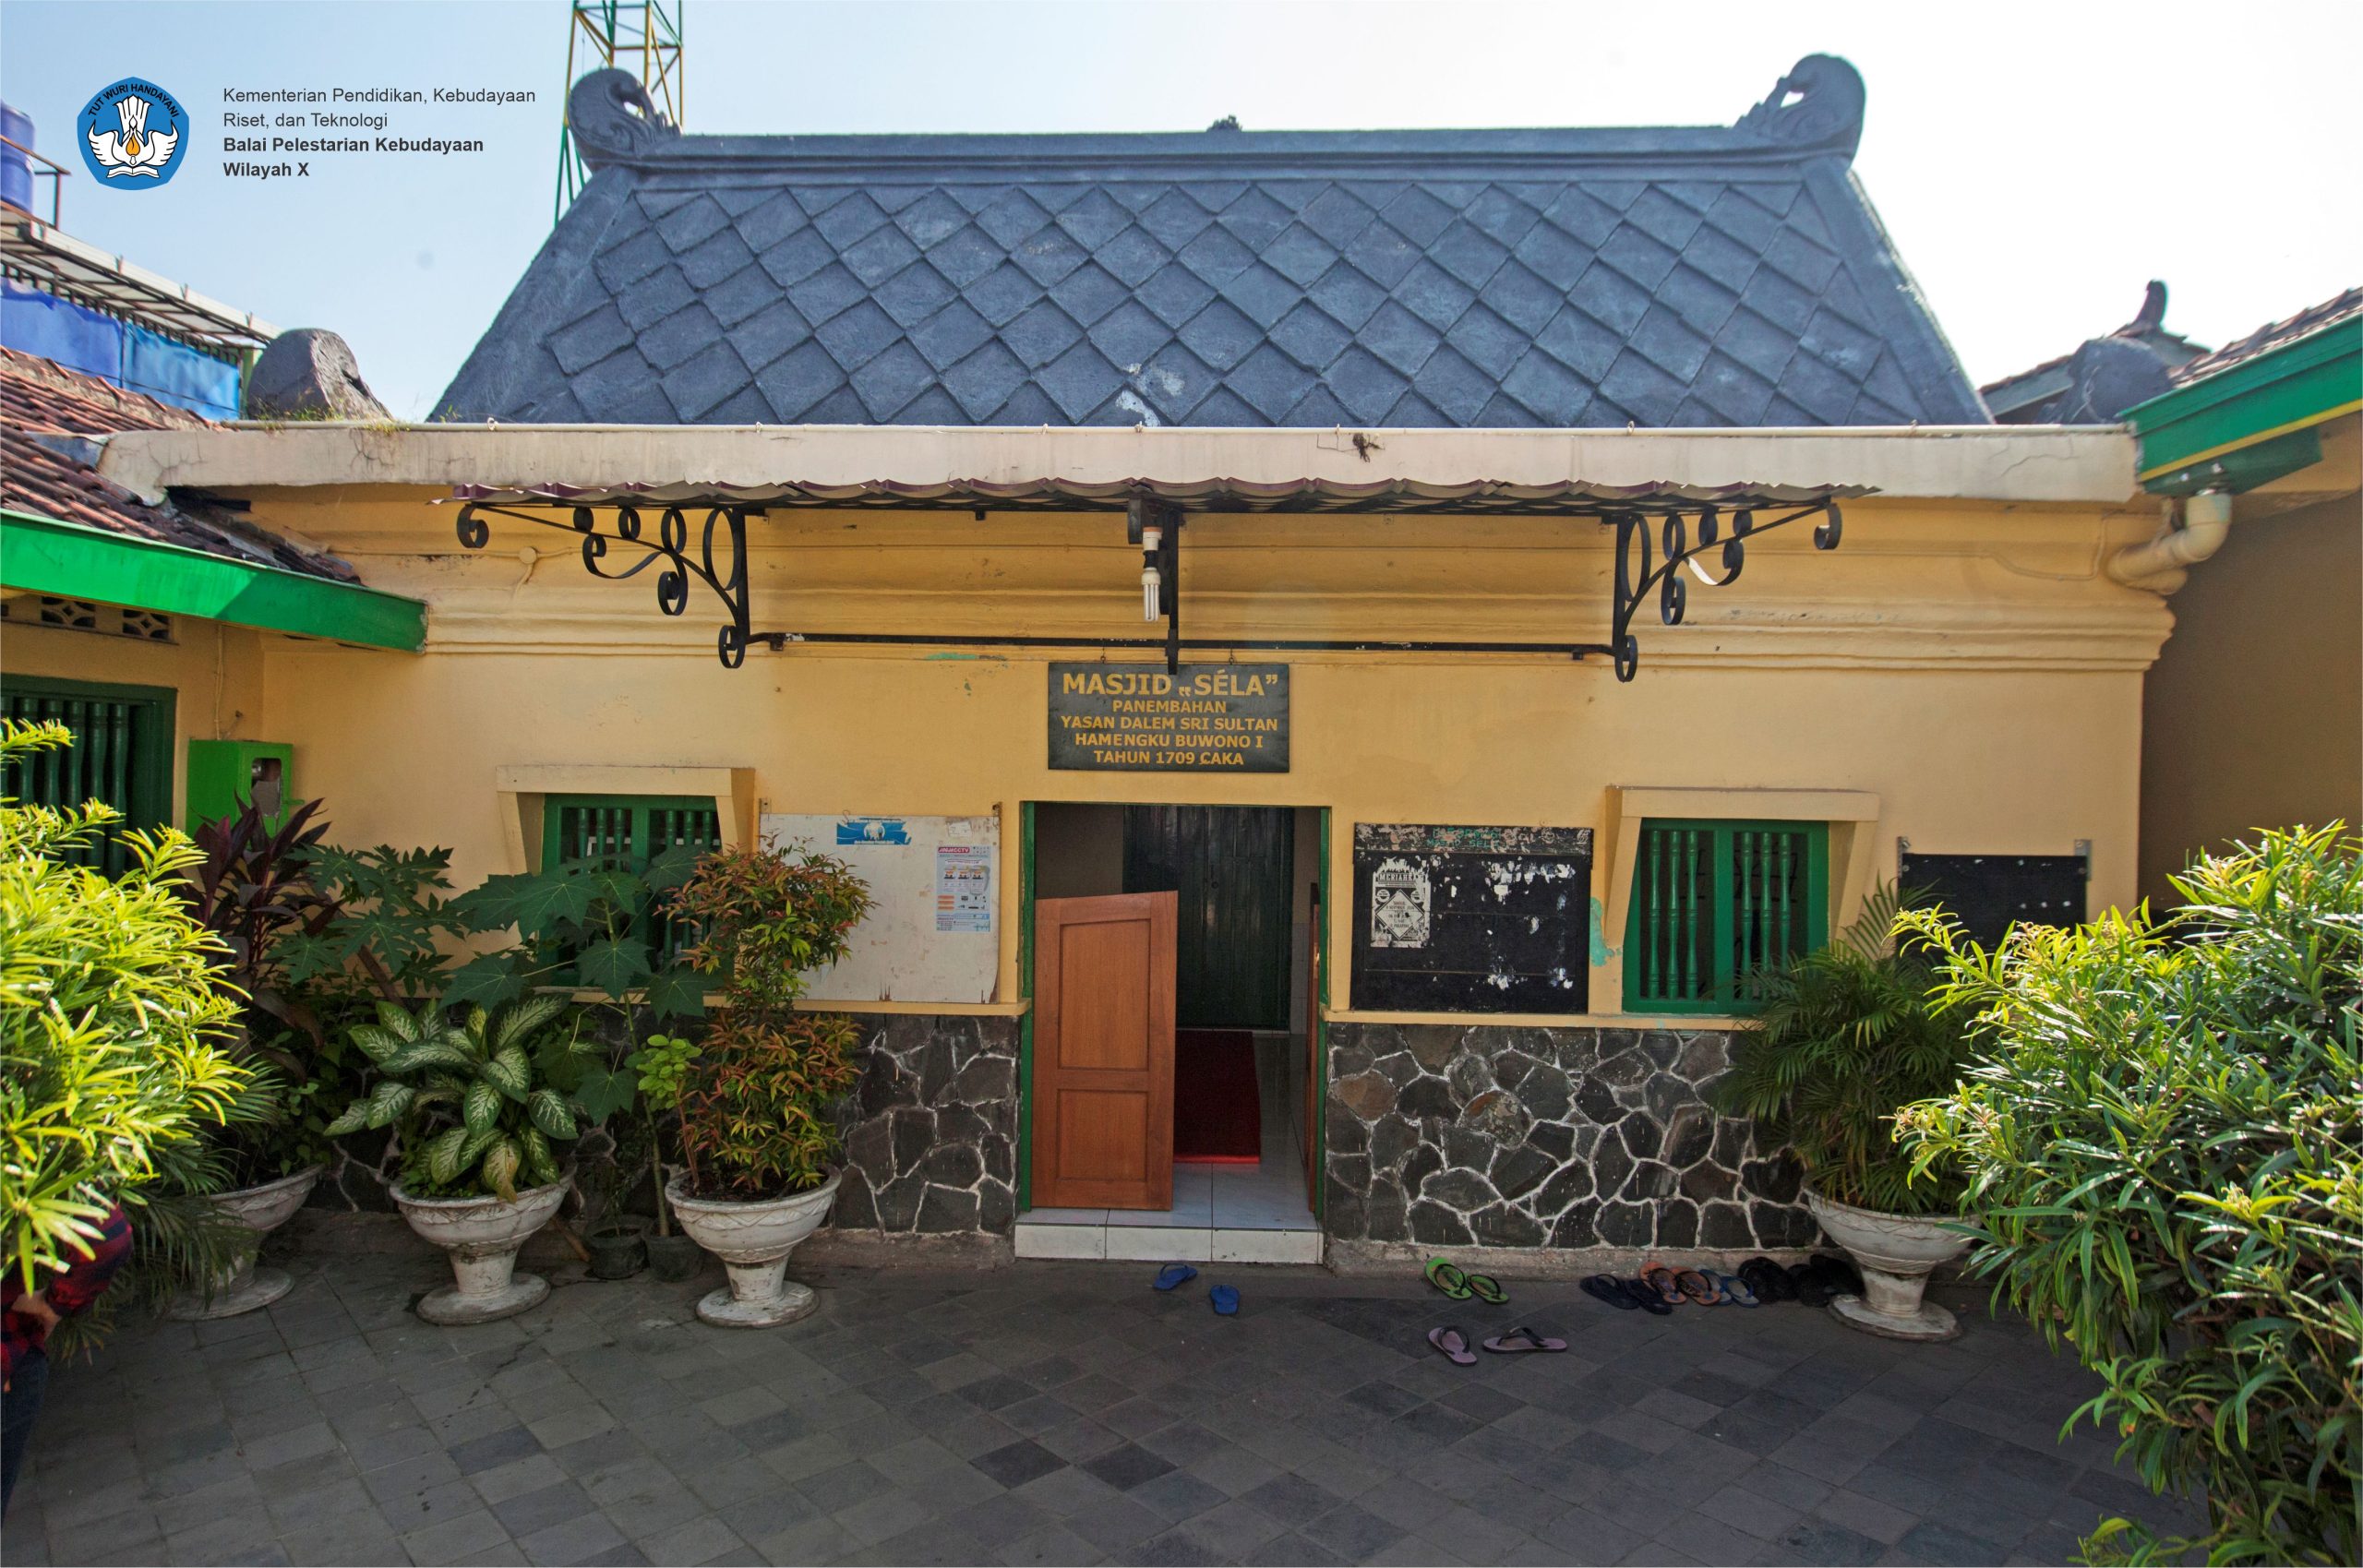 Read more about the article Persamaan Gaya Arsitektur Pesanggrahan Tamansari dan Masjid Sela Panembahan